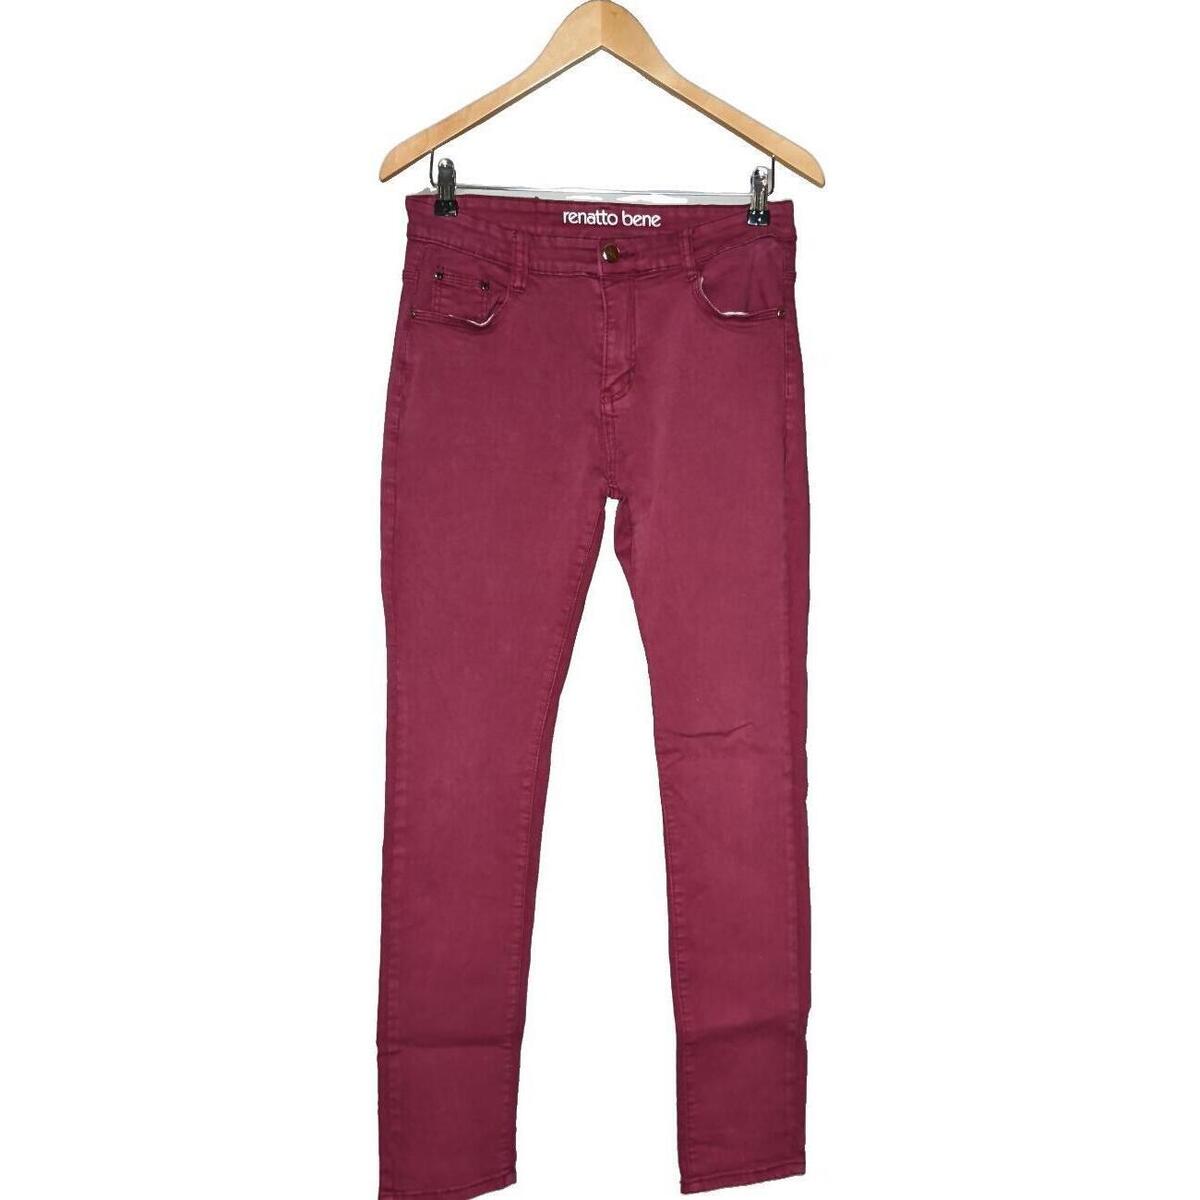 Vêtements Femme Pantalons Renatto Bene 40 - T3 - L Violet